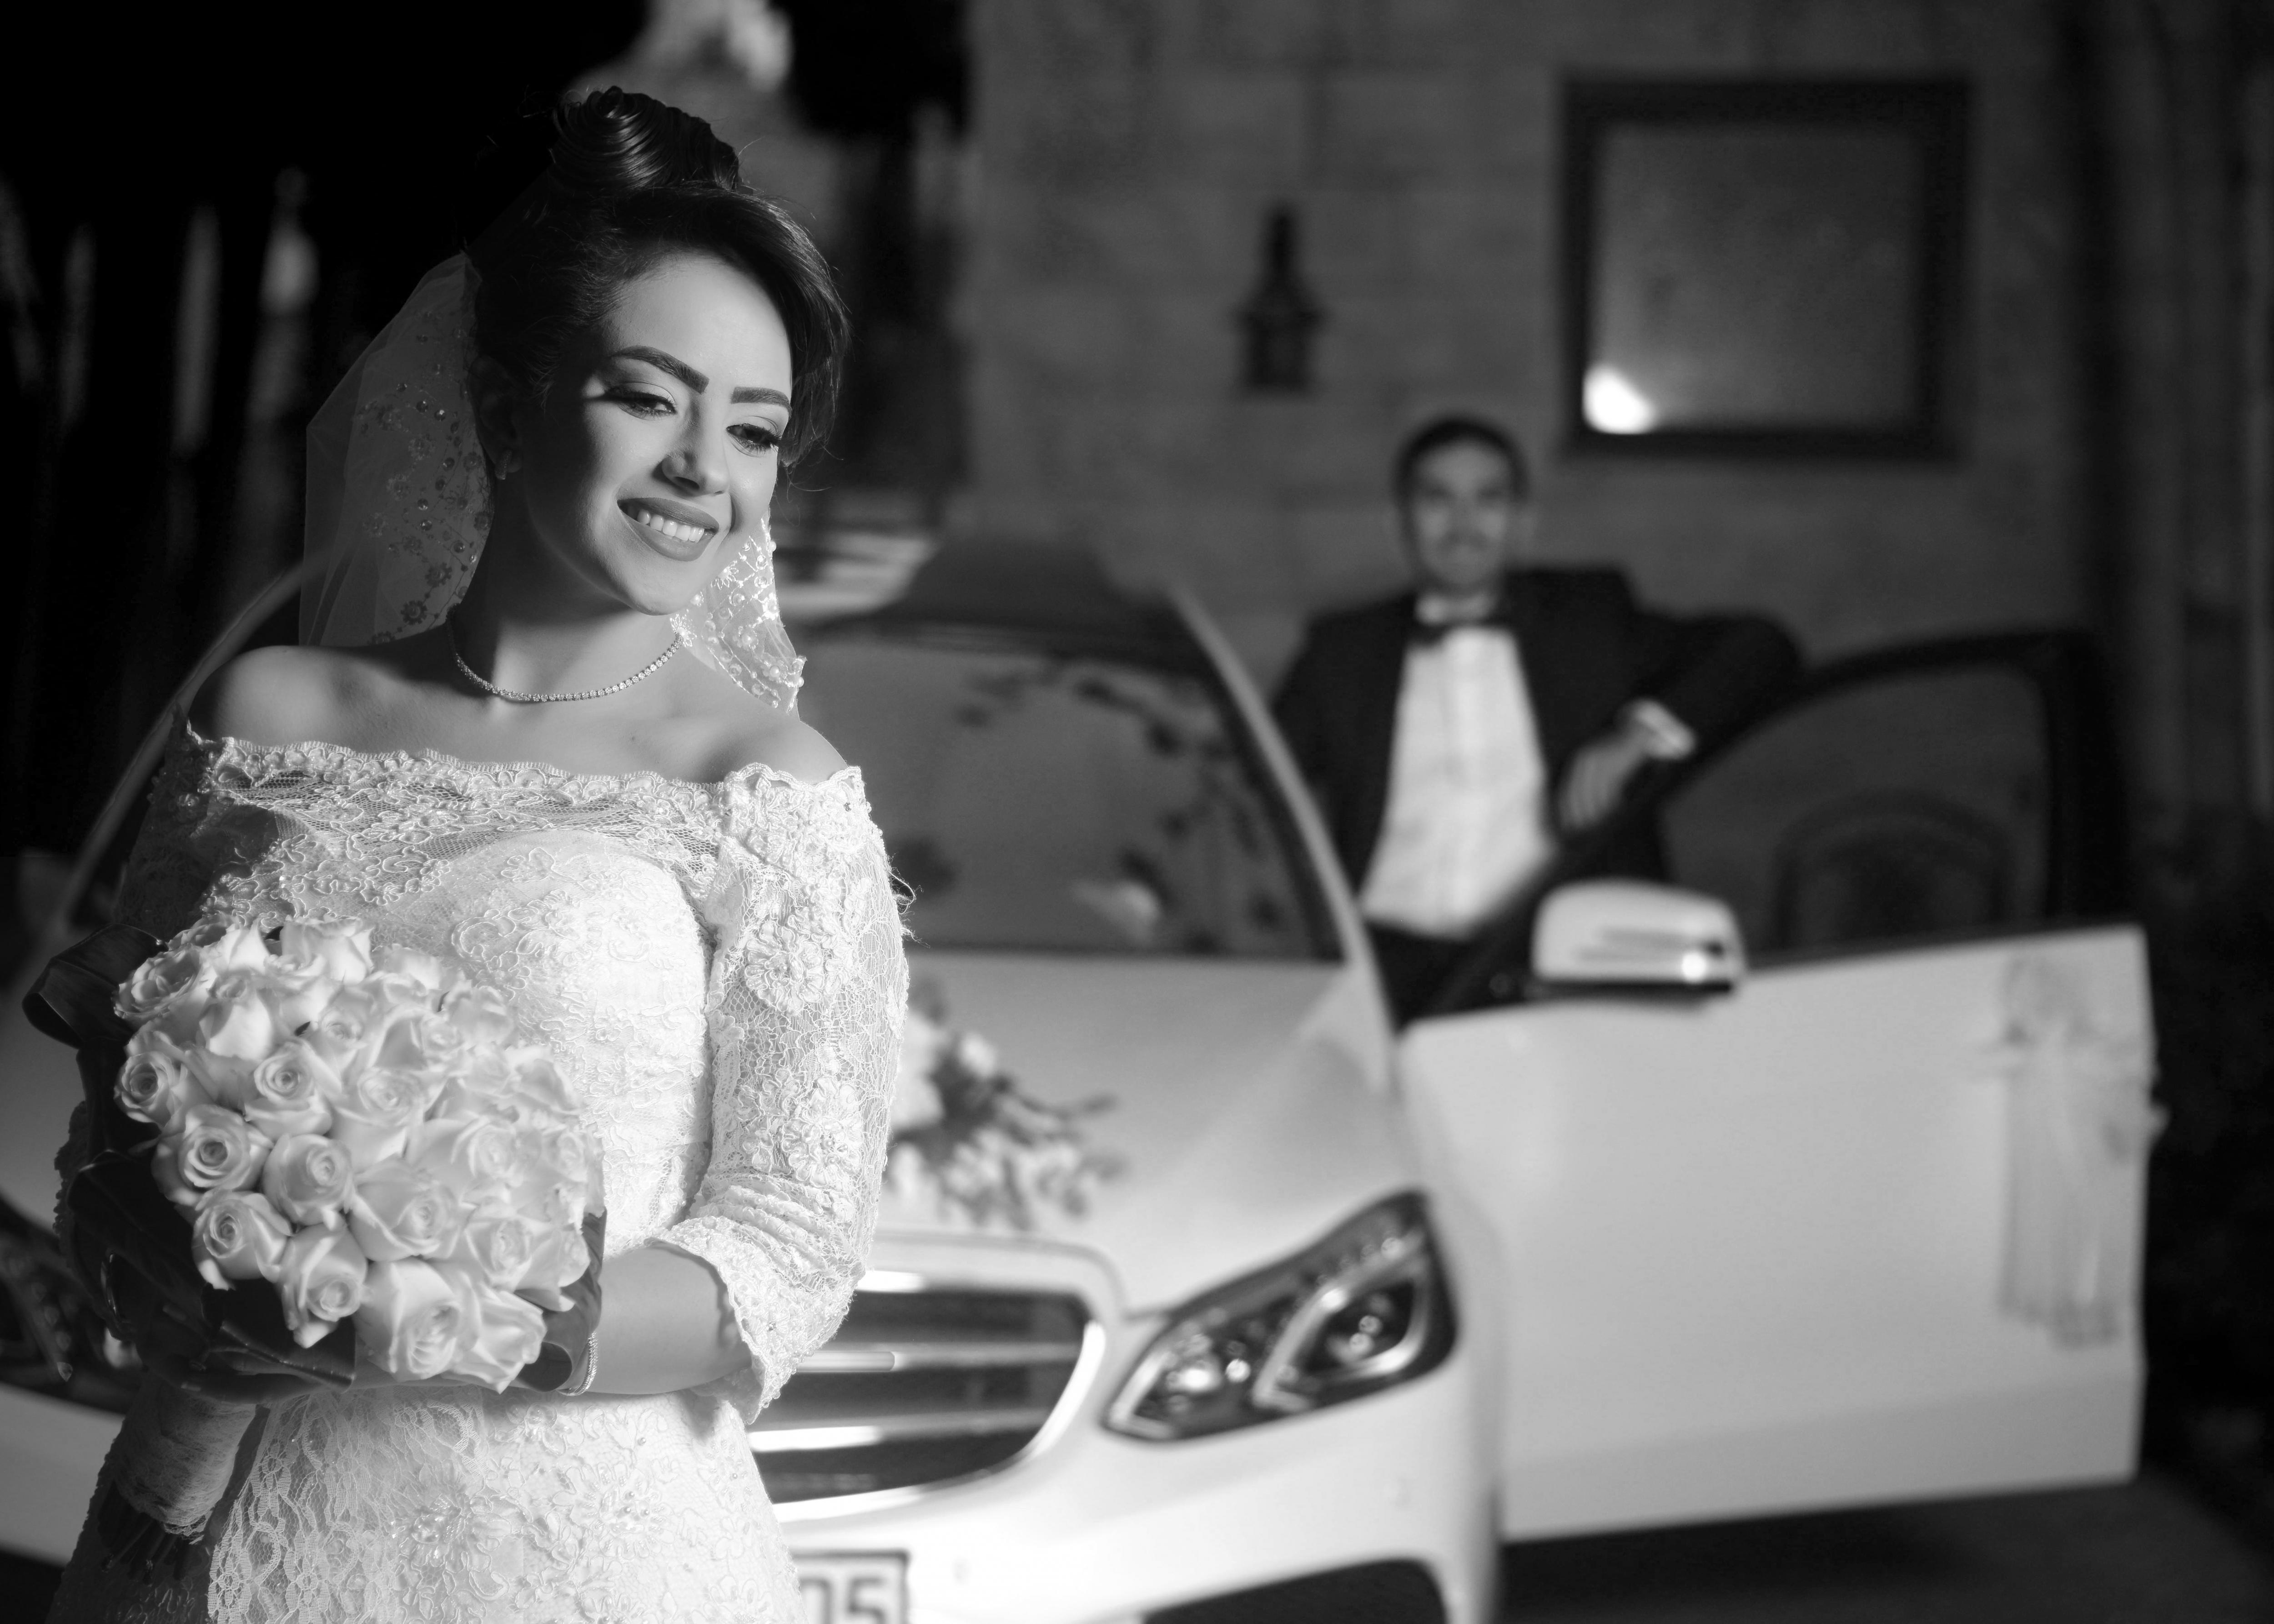 othman_abu_labans_wedding_2.jpg